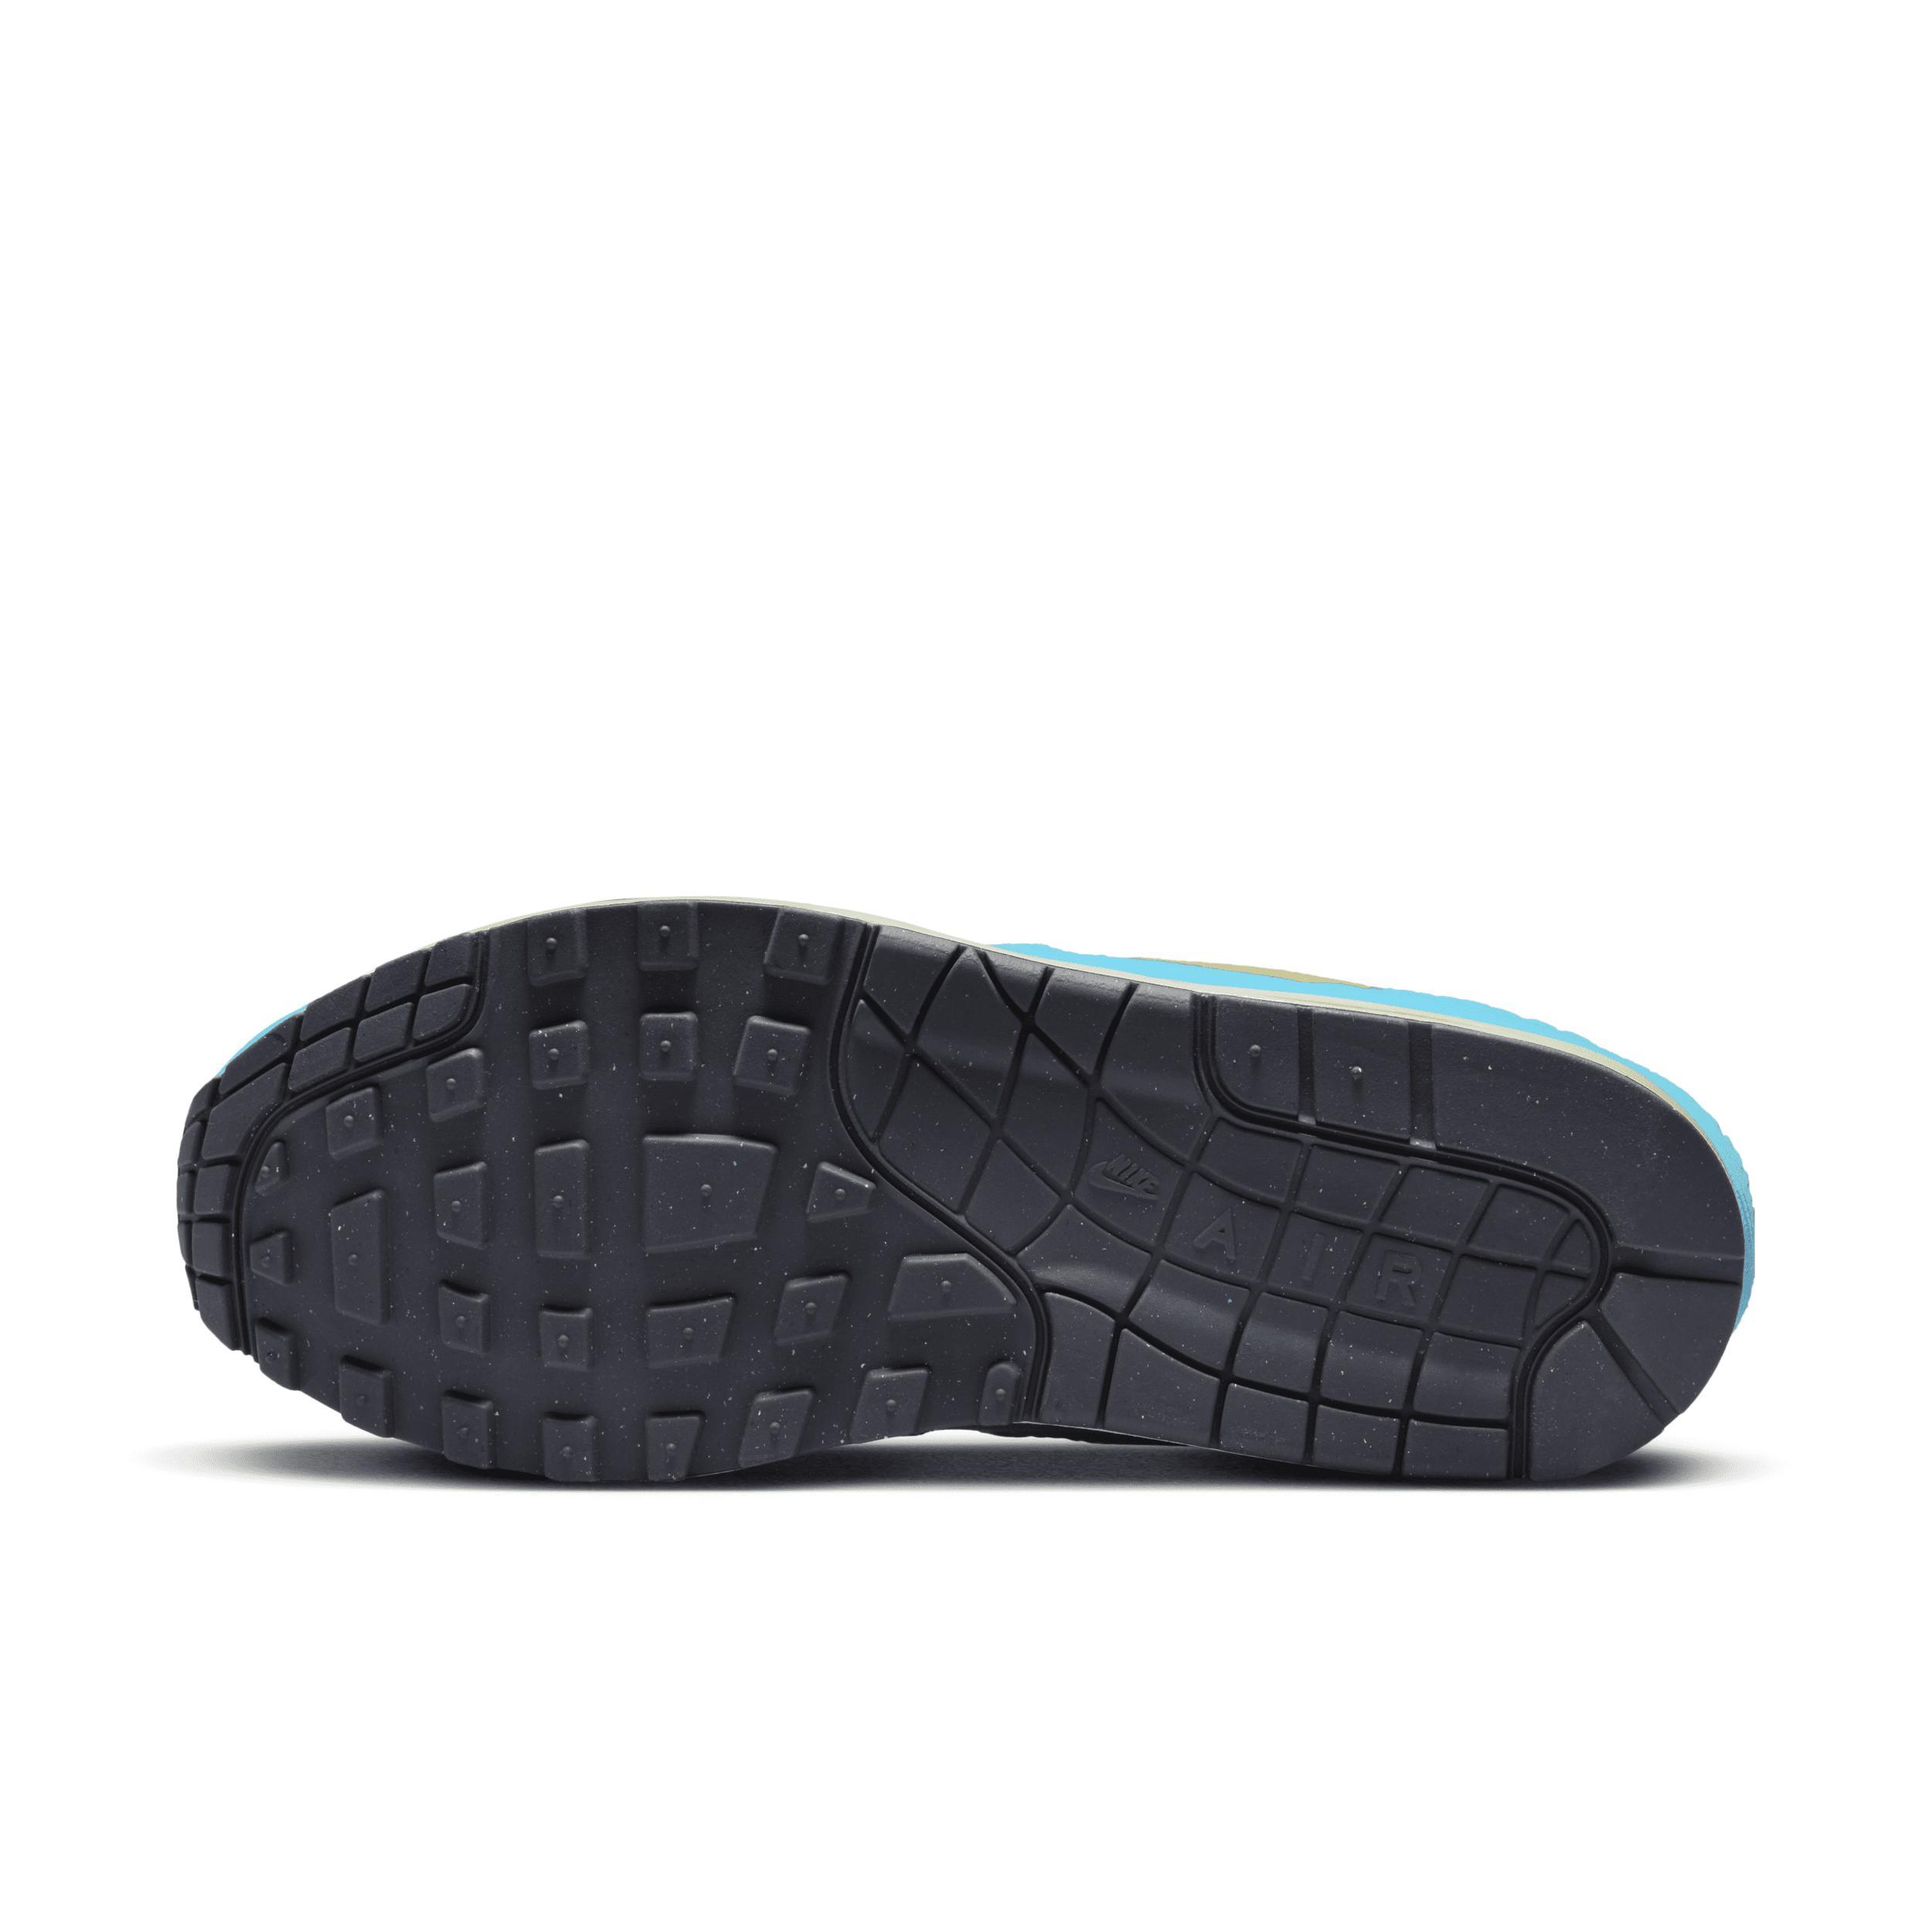 Nike Men's Air Max 1 Premium Shoes Product Image